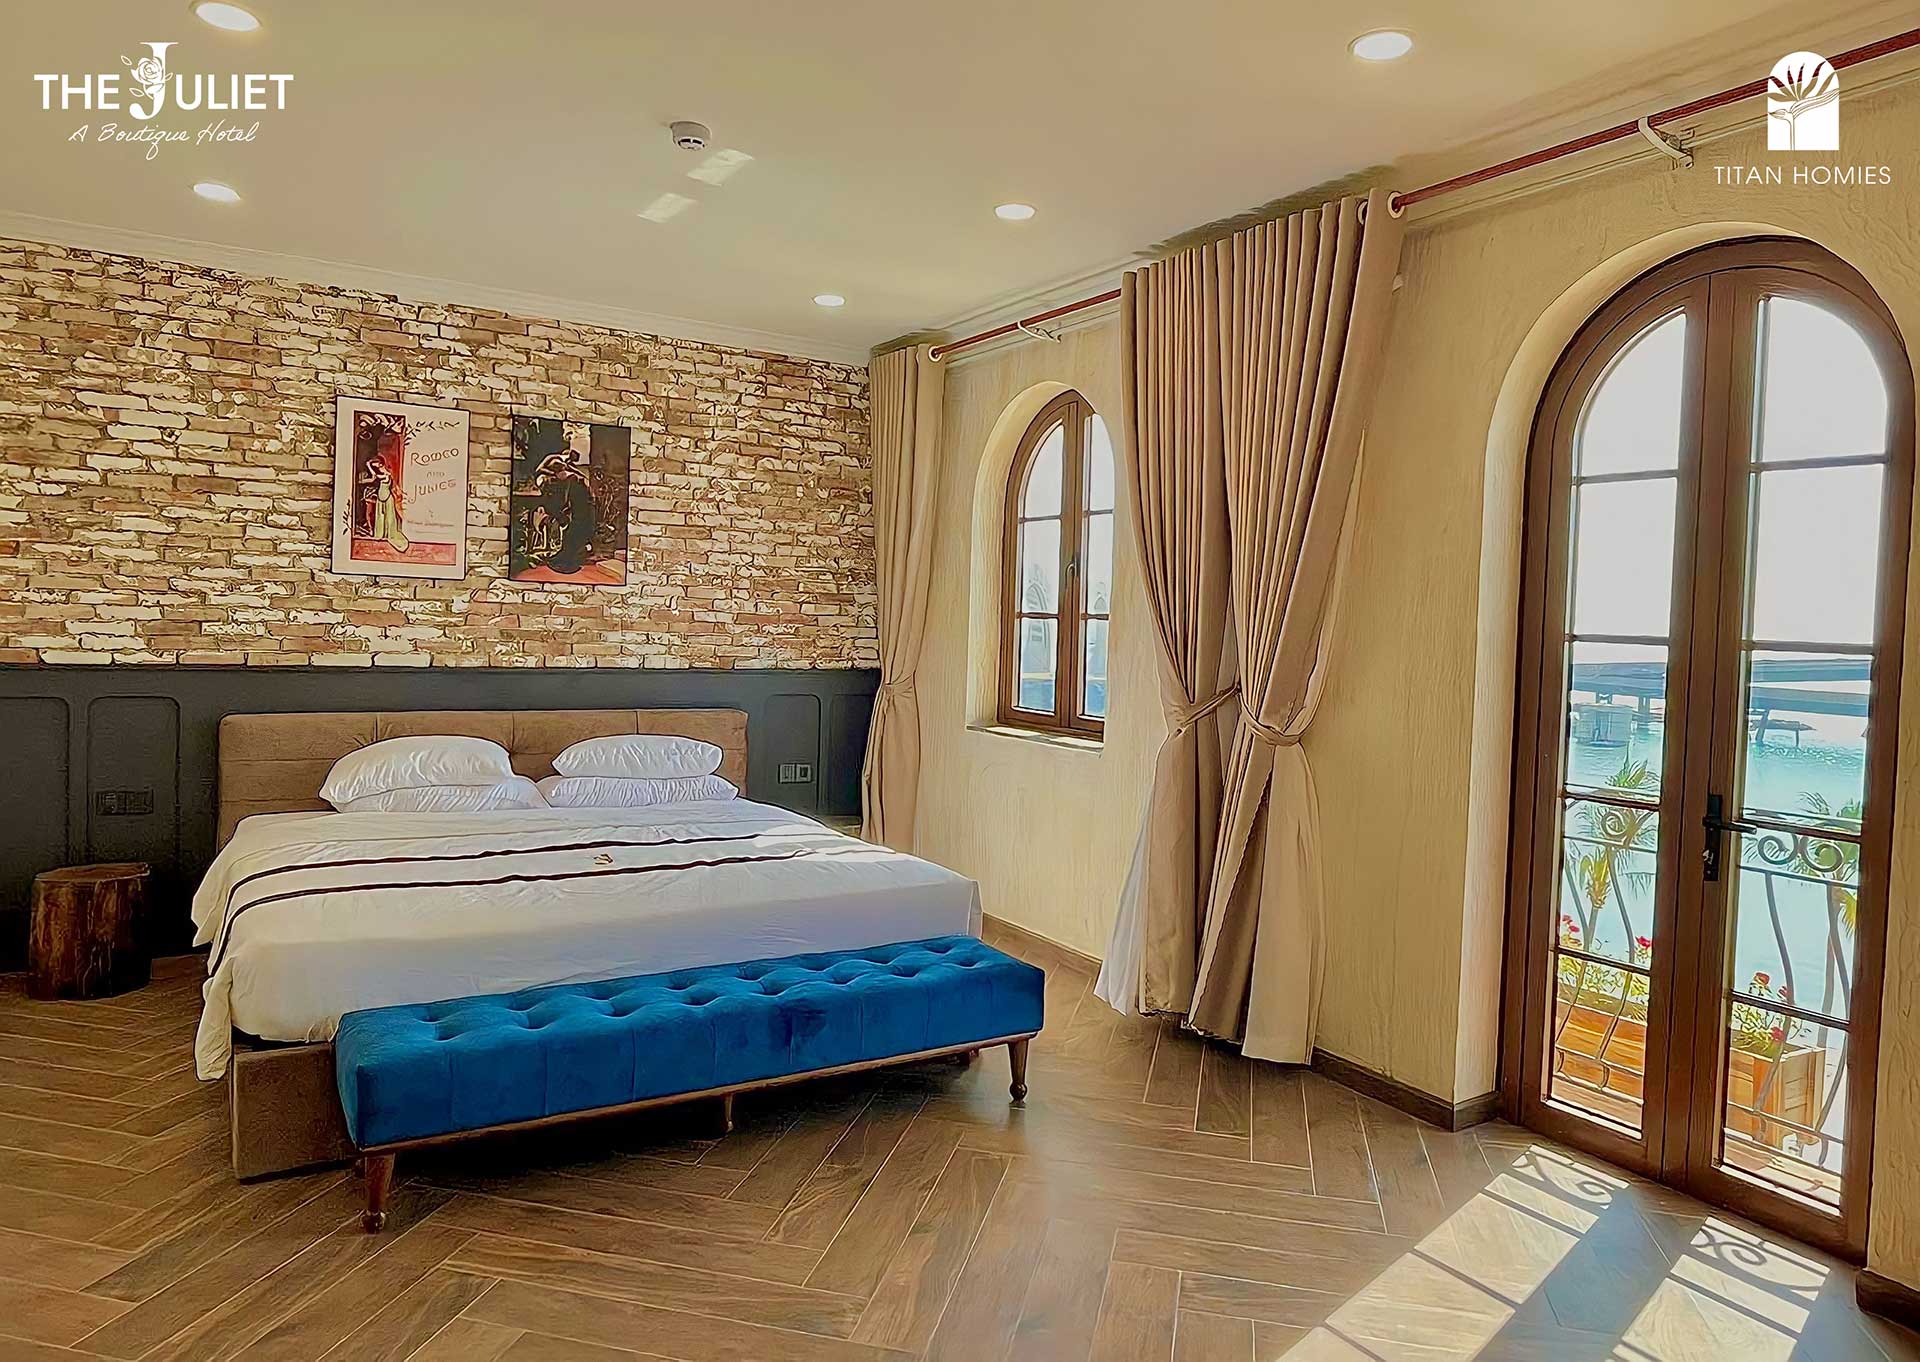 Thiết kế khách sạn Juliet mang màu sắc vintage, cổ điển sở hữu tầm view trực diện cầu Hôn